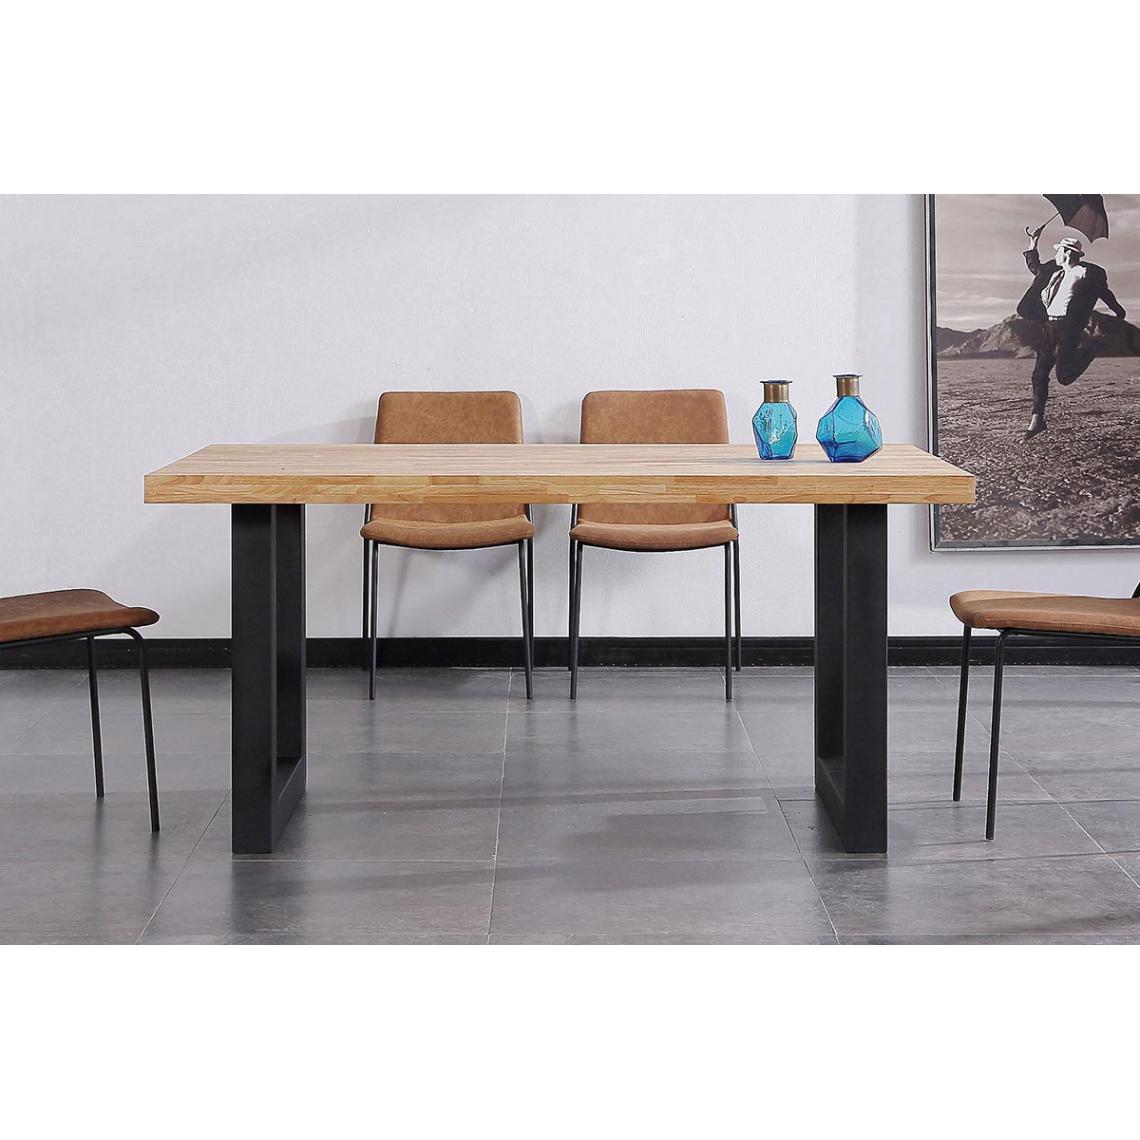 Pegane - Table à manger en bois coloris chêne nordique / pieds noir - Longueur 160 x profondeur 100 x hauteur 75 cm - Tables à manger